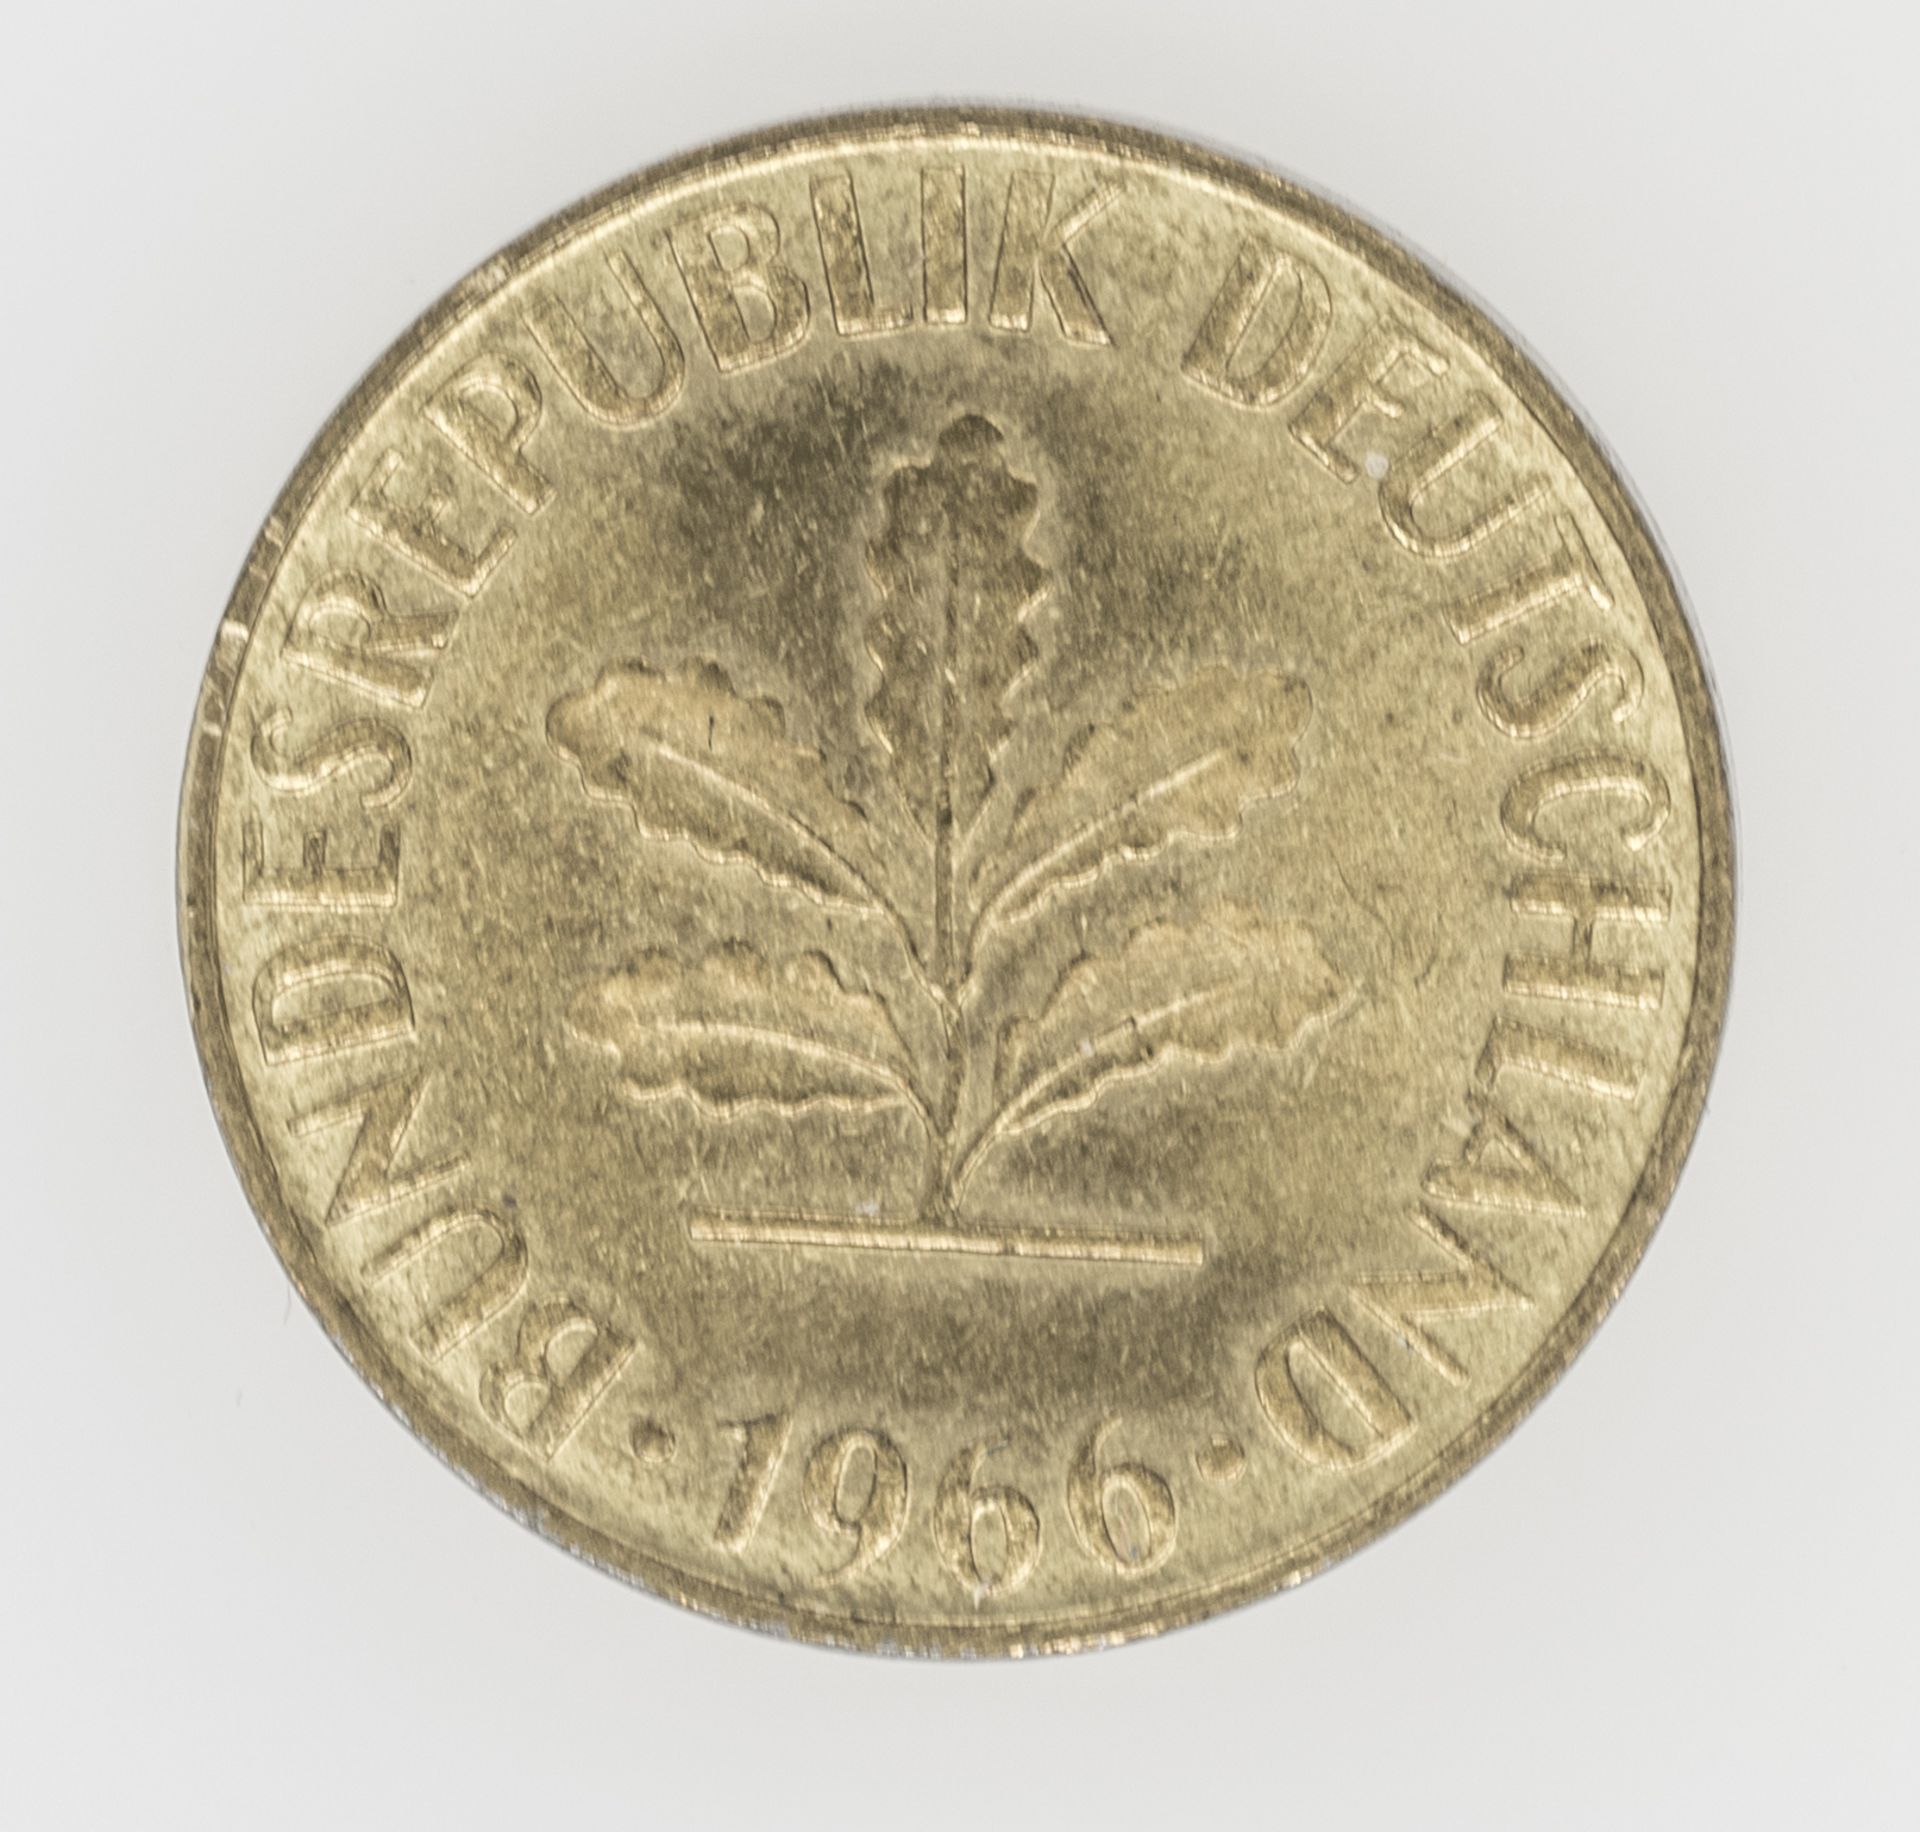 BRD 1966 G, 5 Pfennig - Münze, Fehlprägung: Mit Querstrich im "G". - Bild 2 aus 2